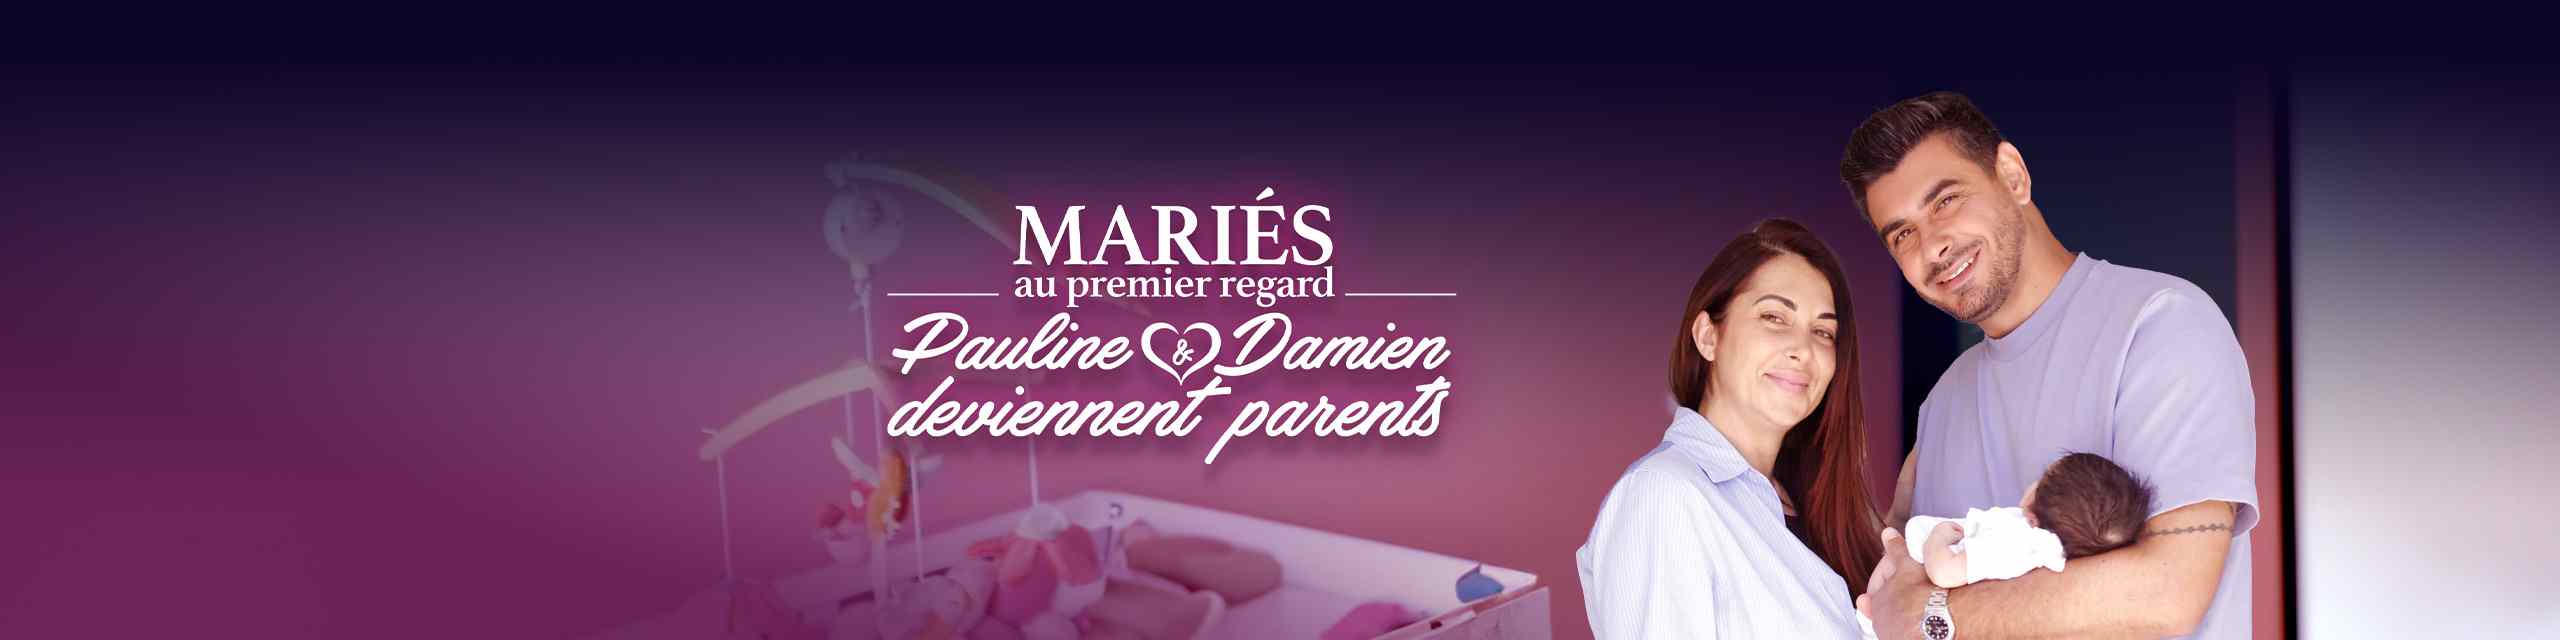 Mariés au premier regard : Pauline et Damien deviennent parents